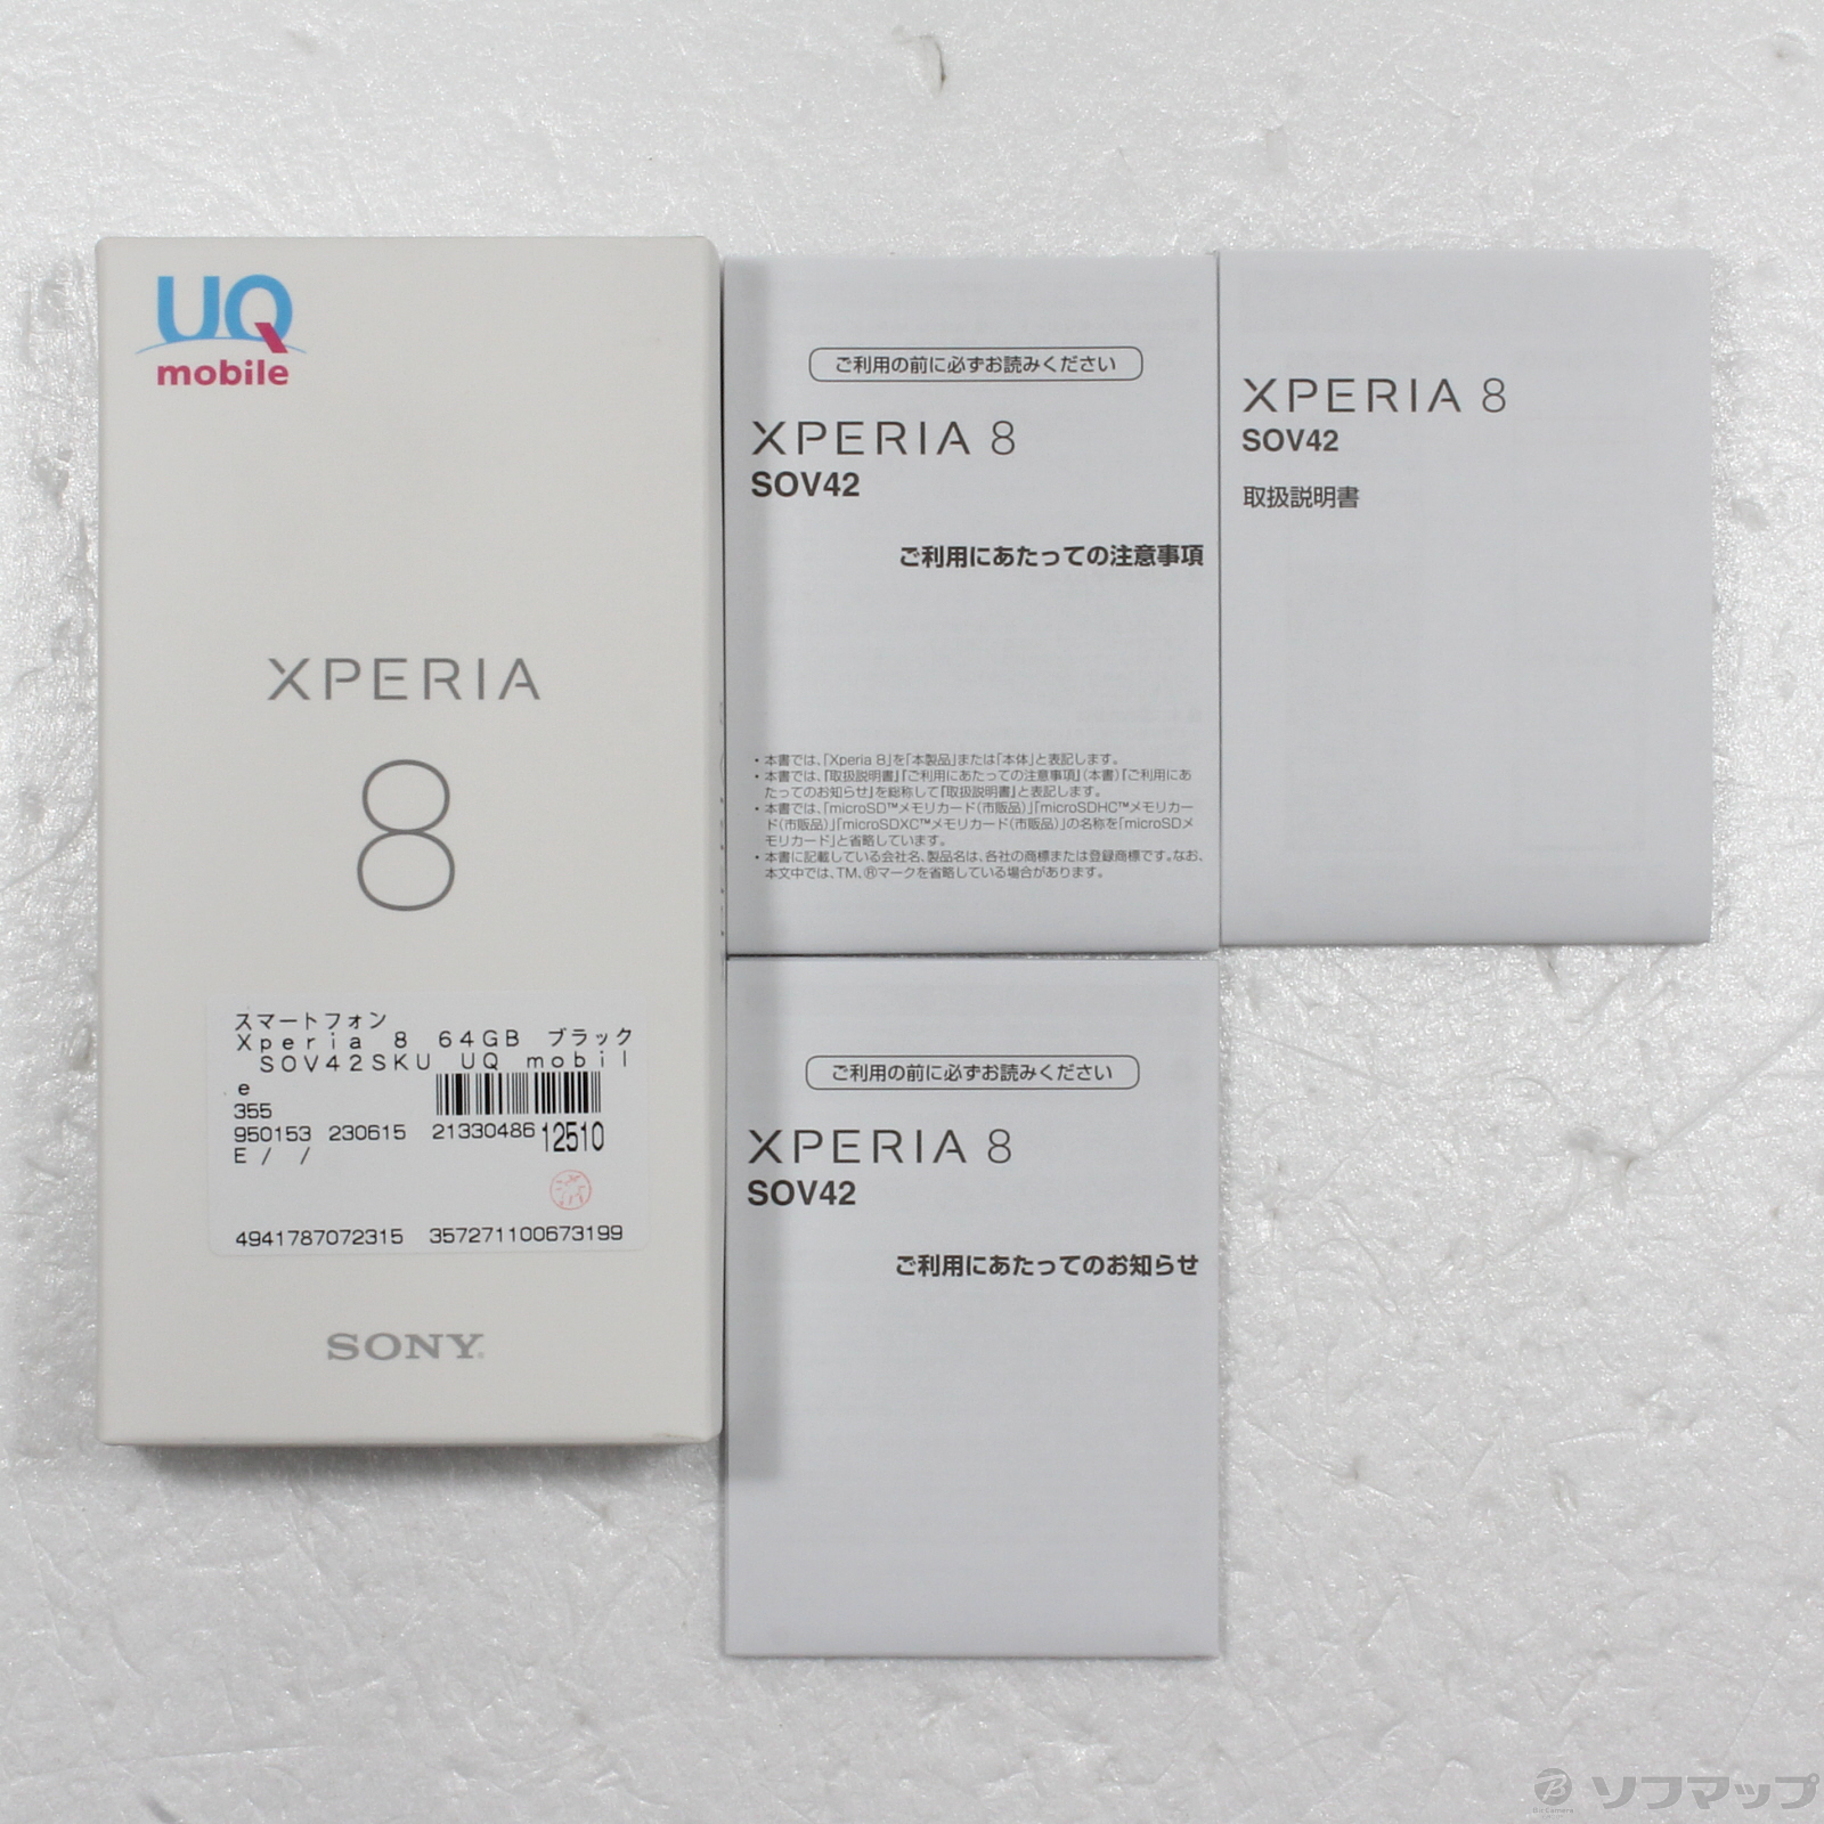 中古】Xperia 8 64GB ブラック SOV42SKU UQ mobile [2133048612510